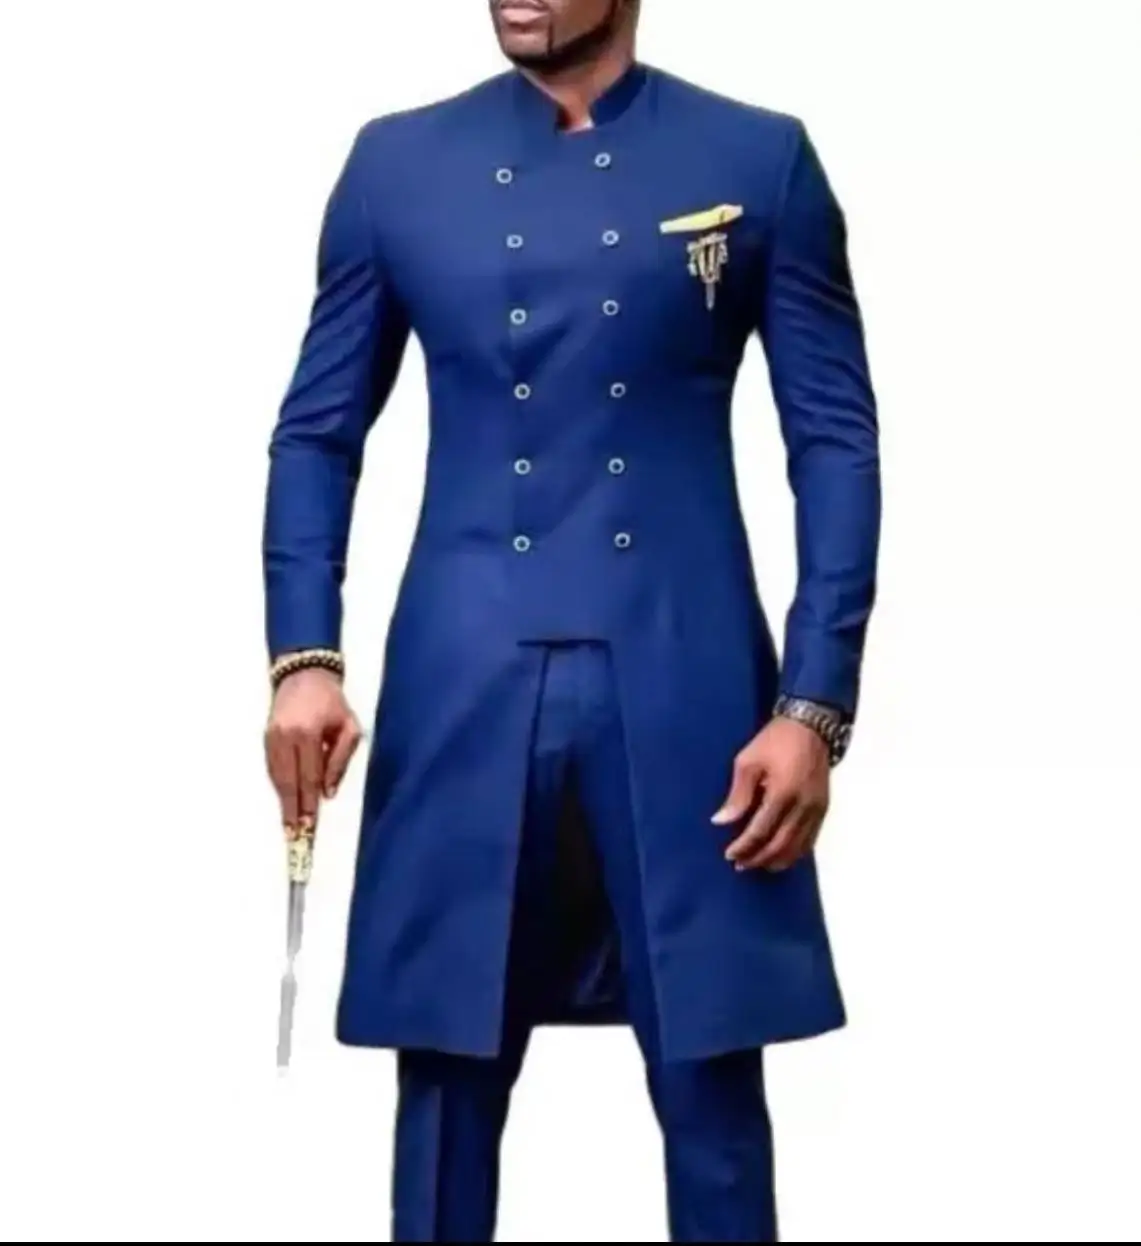 कैज़ुअल सूट बैंक्वेट अफ़्रीकी टू-पीस सूट नया डिज़ाइन उच्च गुणवत्ता वाले पुरुषों का व्यवसाय दूल्हा और दूल्हा शादी के लिए बुना हुआ लंबे वयस्क